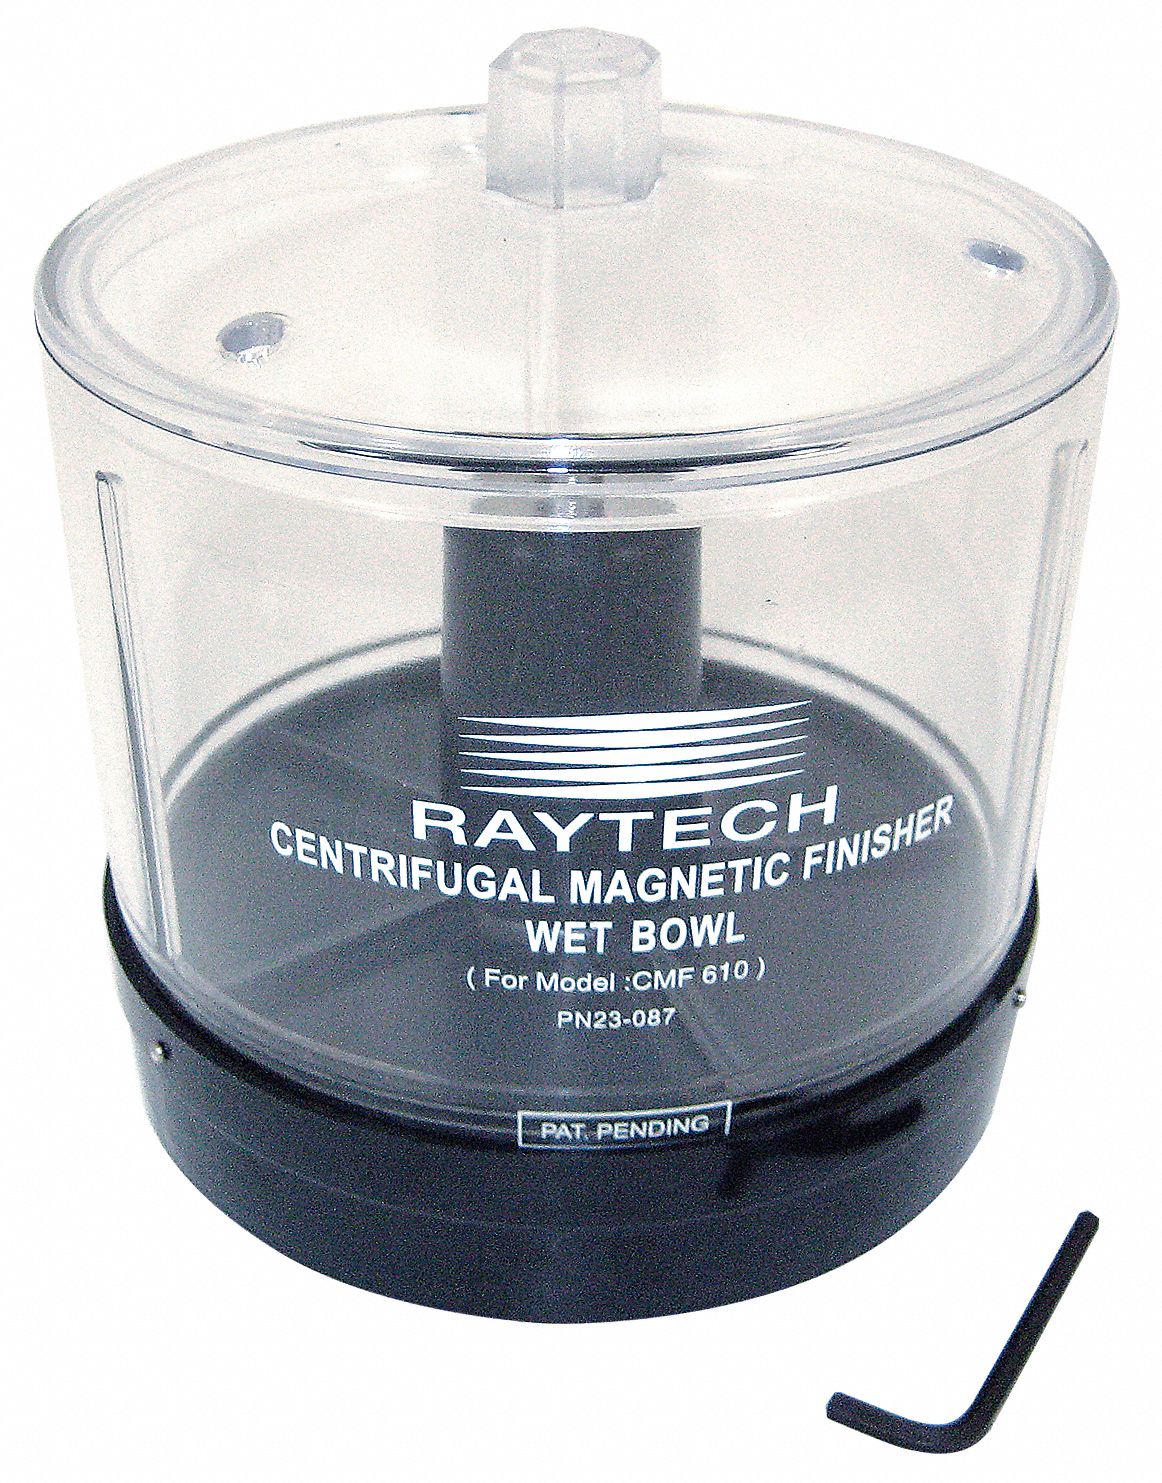 5UJU3 - Centrifugal Magnetic Finisher Dry Bowl